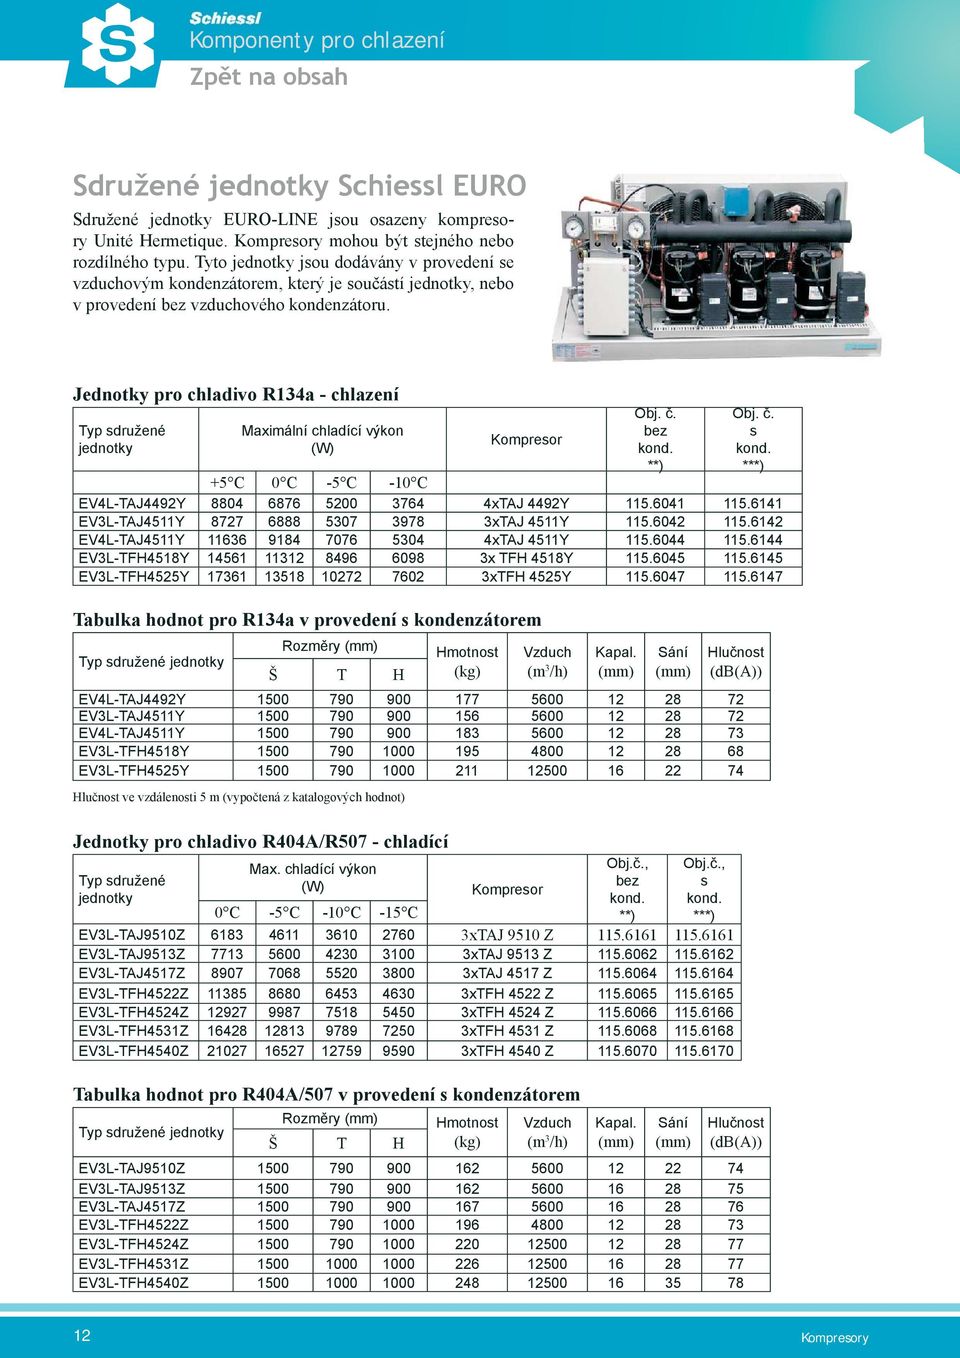 Jednotky pro chladivo R134a - chlazení Typ sdružené jednotky Maximální chladící výkon (W) Kompresor Obj. č. bez kond. **) Obj. č. s kond.